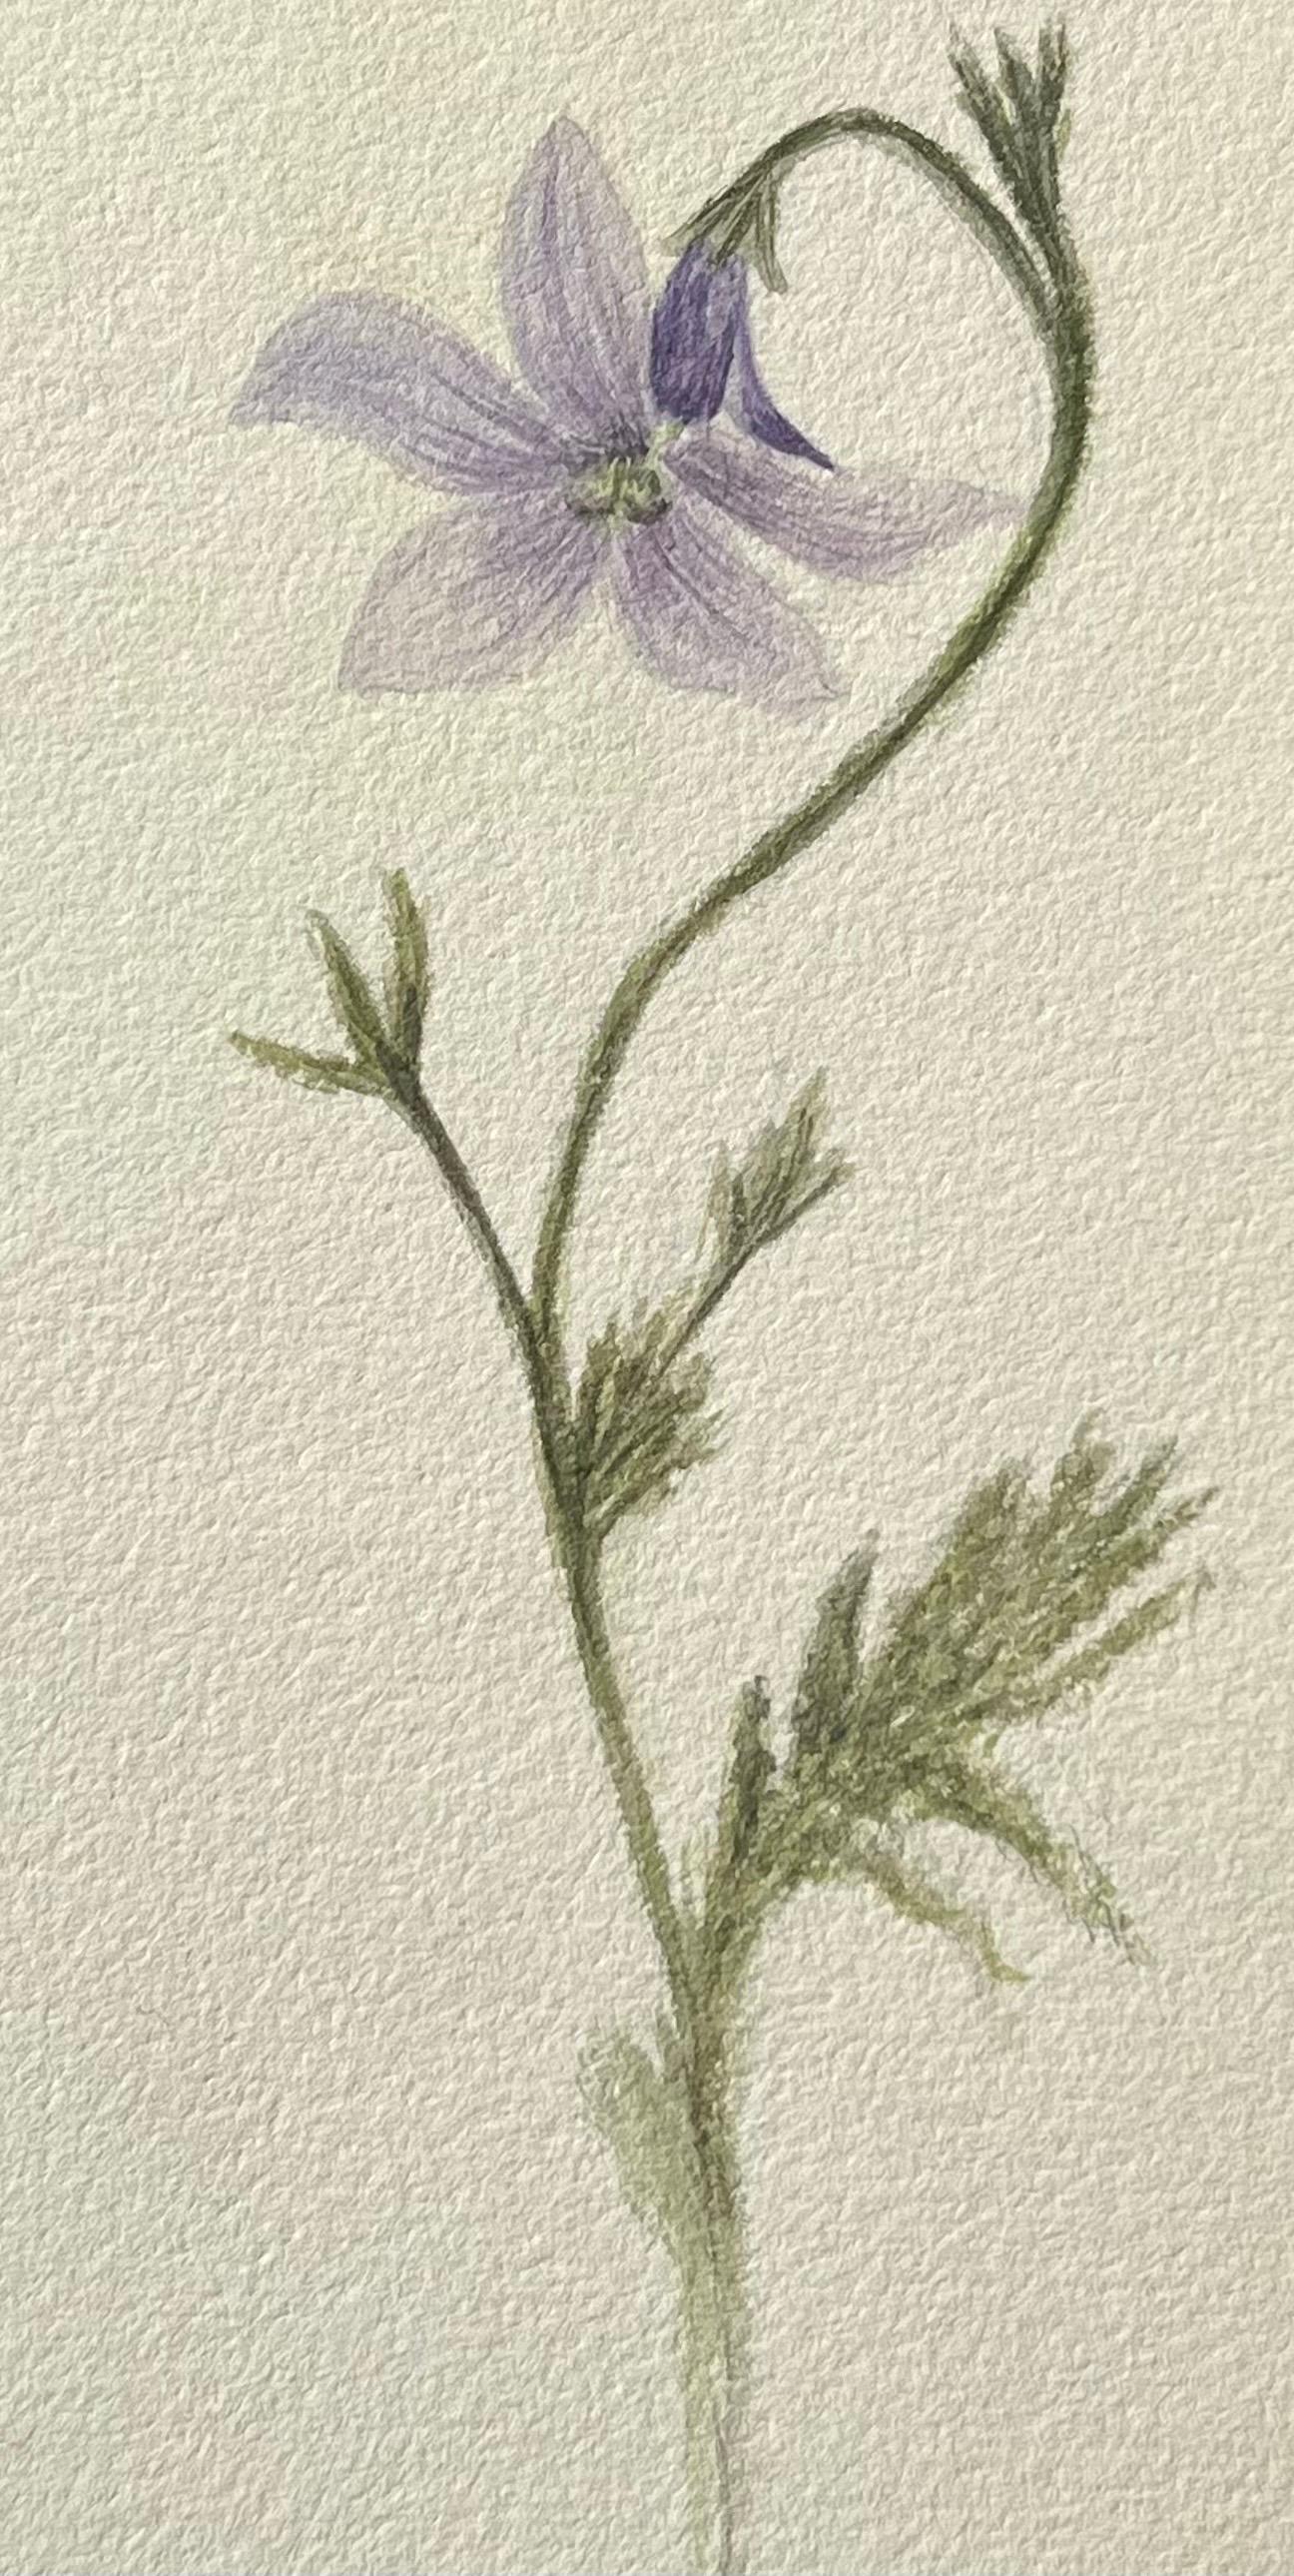 Antikes britisches botanisches Gemälde, lila Harebell-Pflanzgefäß, Vintage